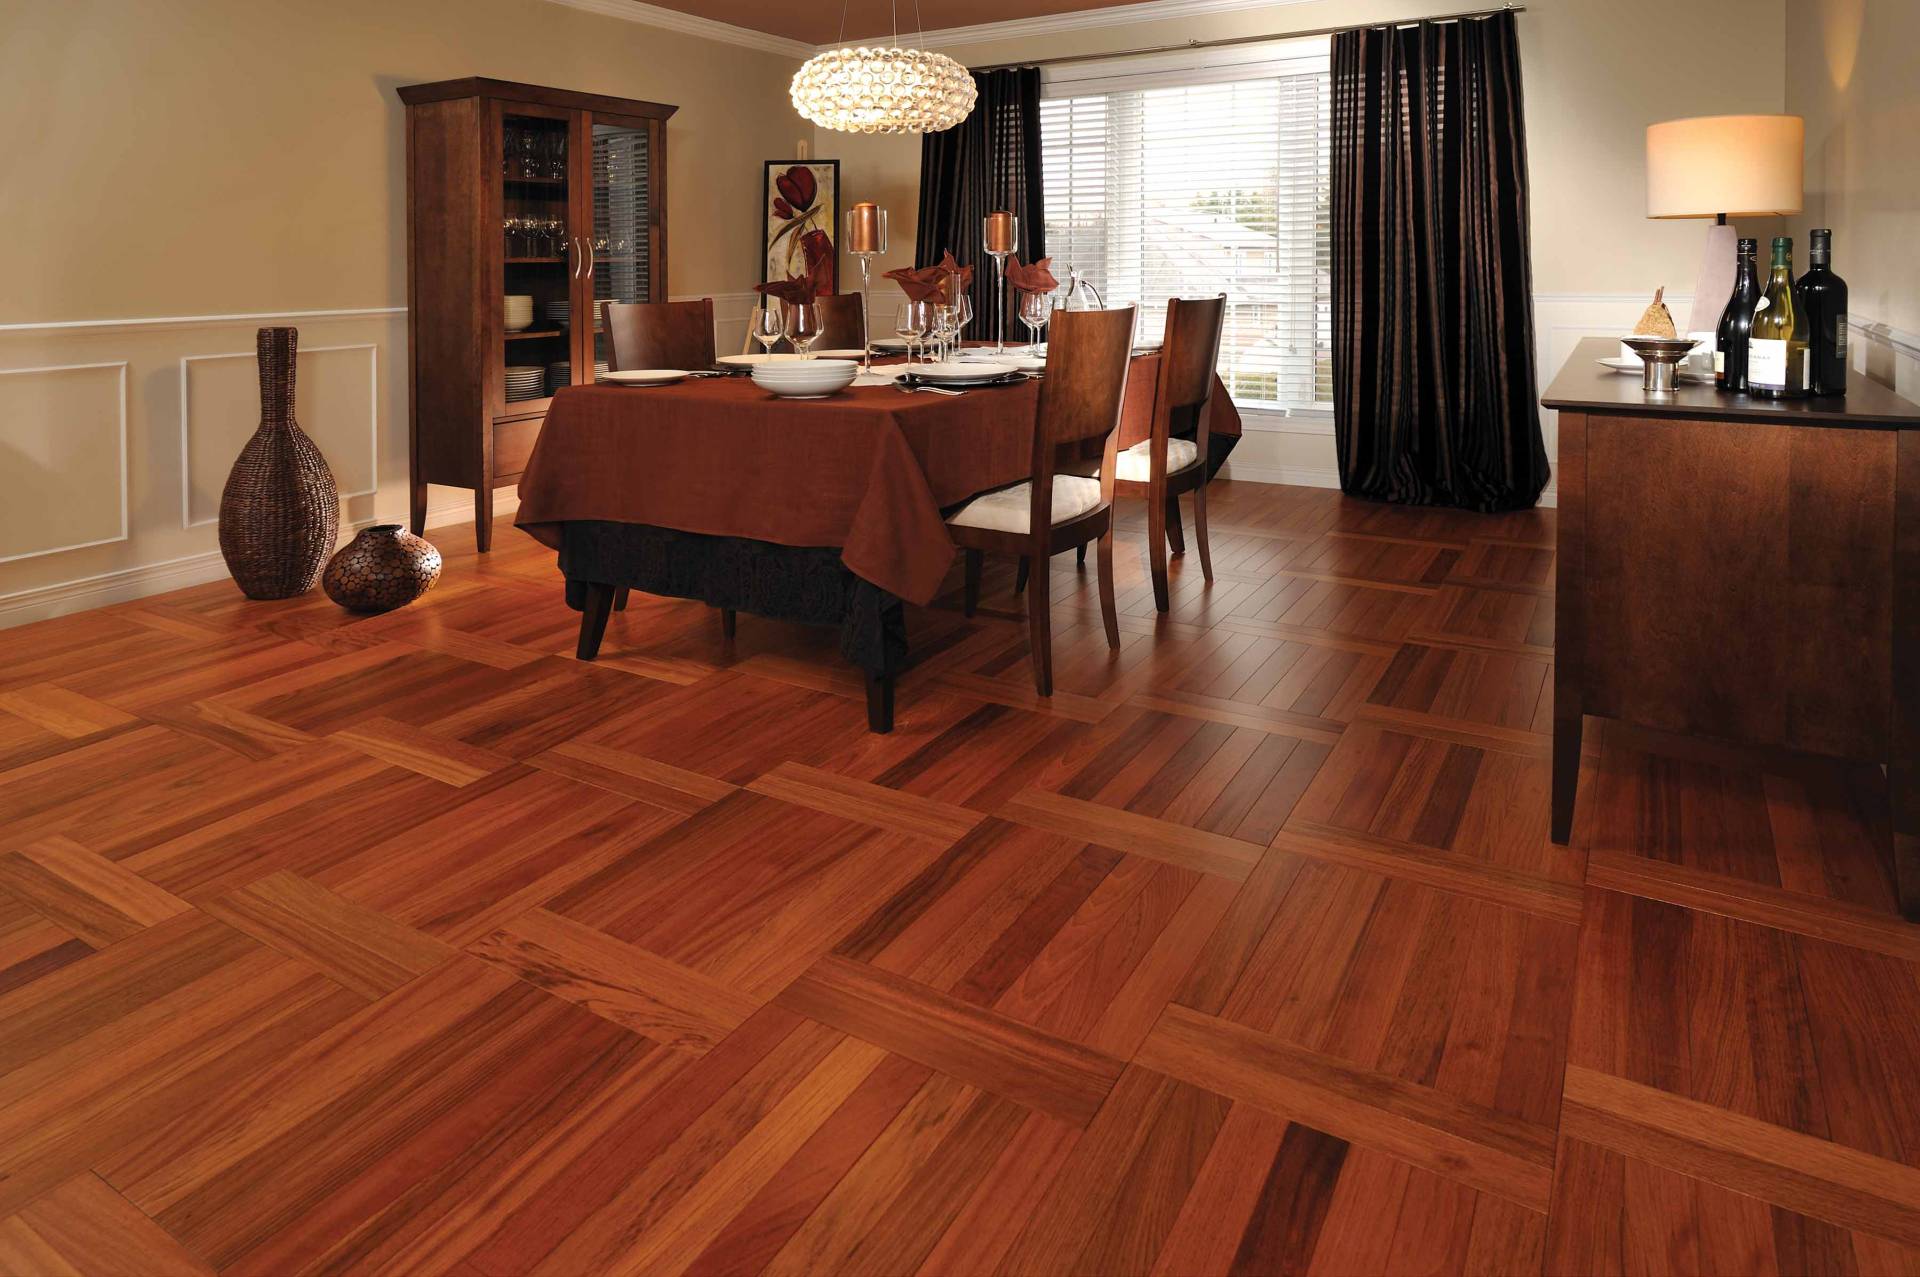 25 Great Examples Of Laminate Hardwood Flooring - Interior Design ...